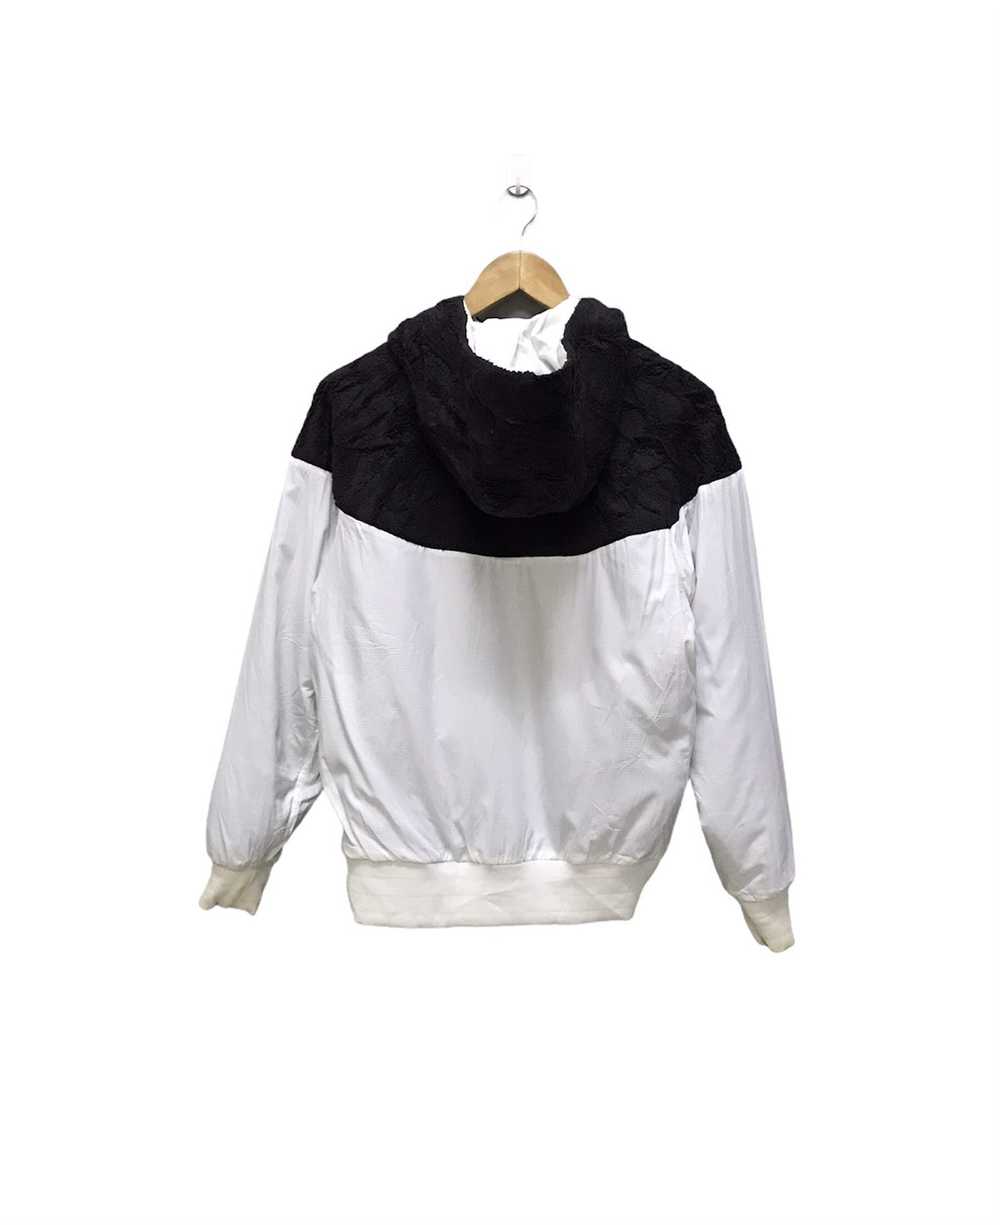 Nike Nike Sweatshirt hoodie revesible zipper jack… - image 6